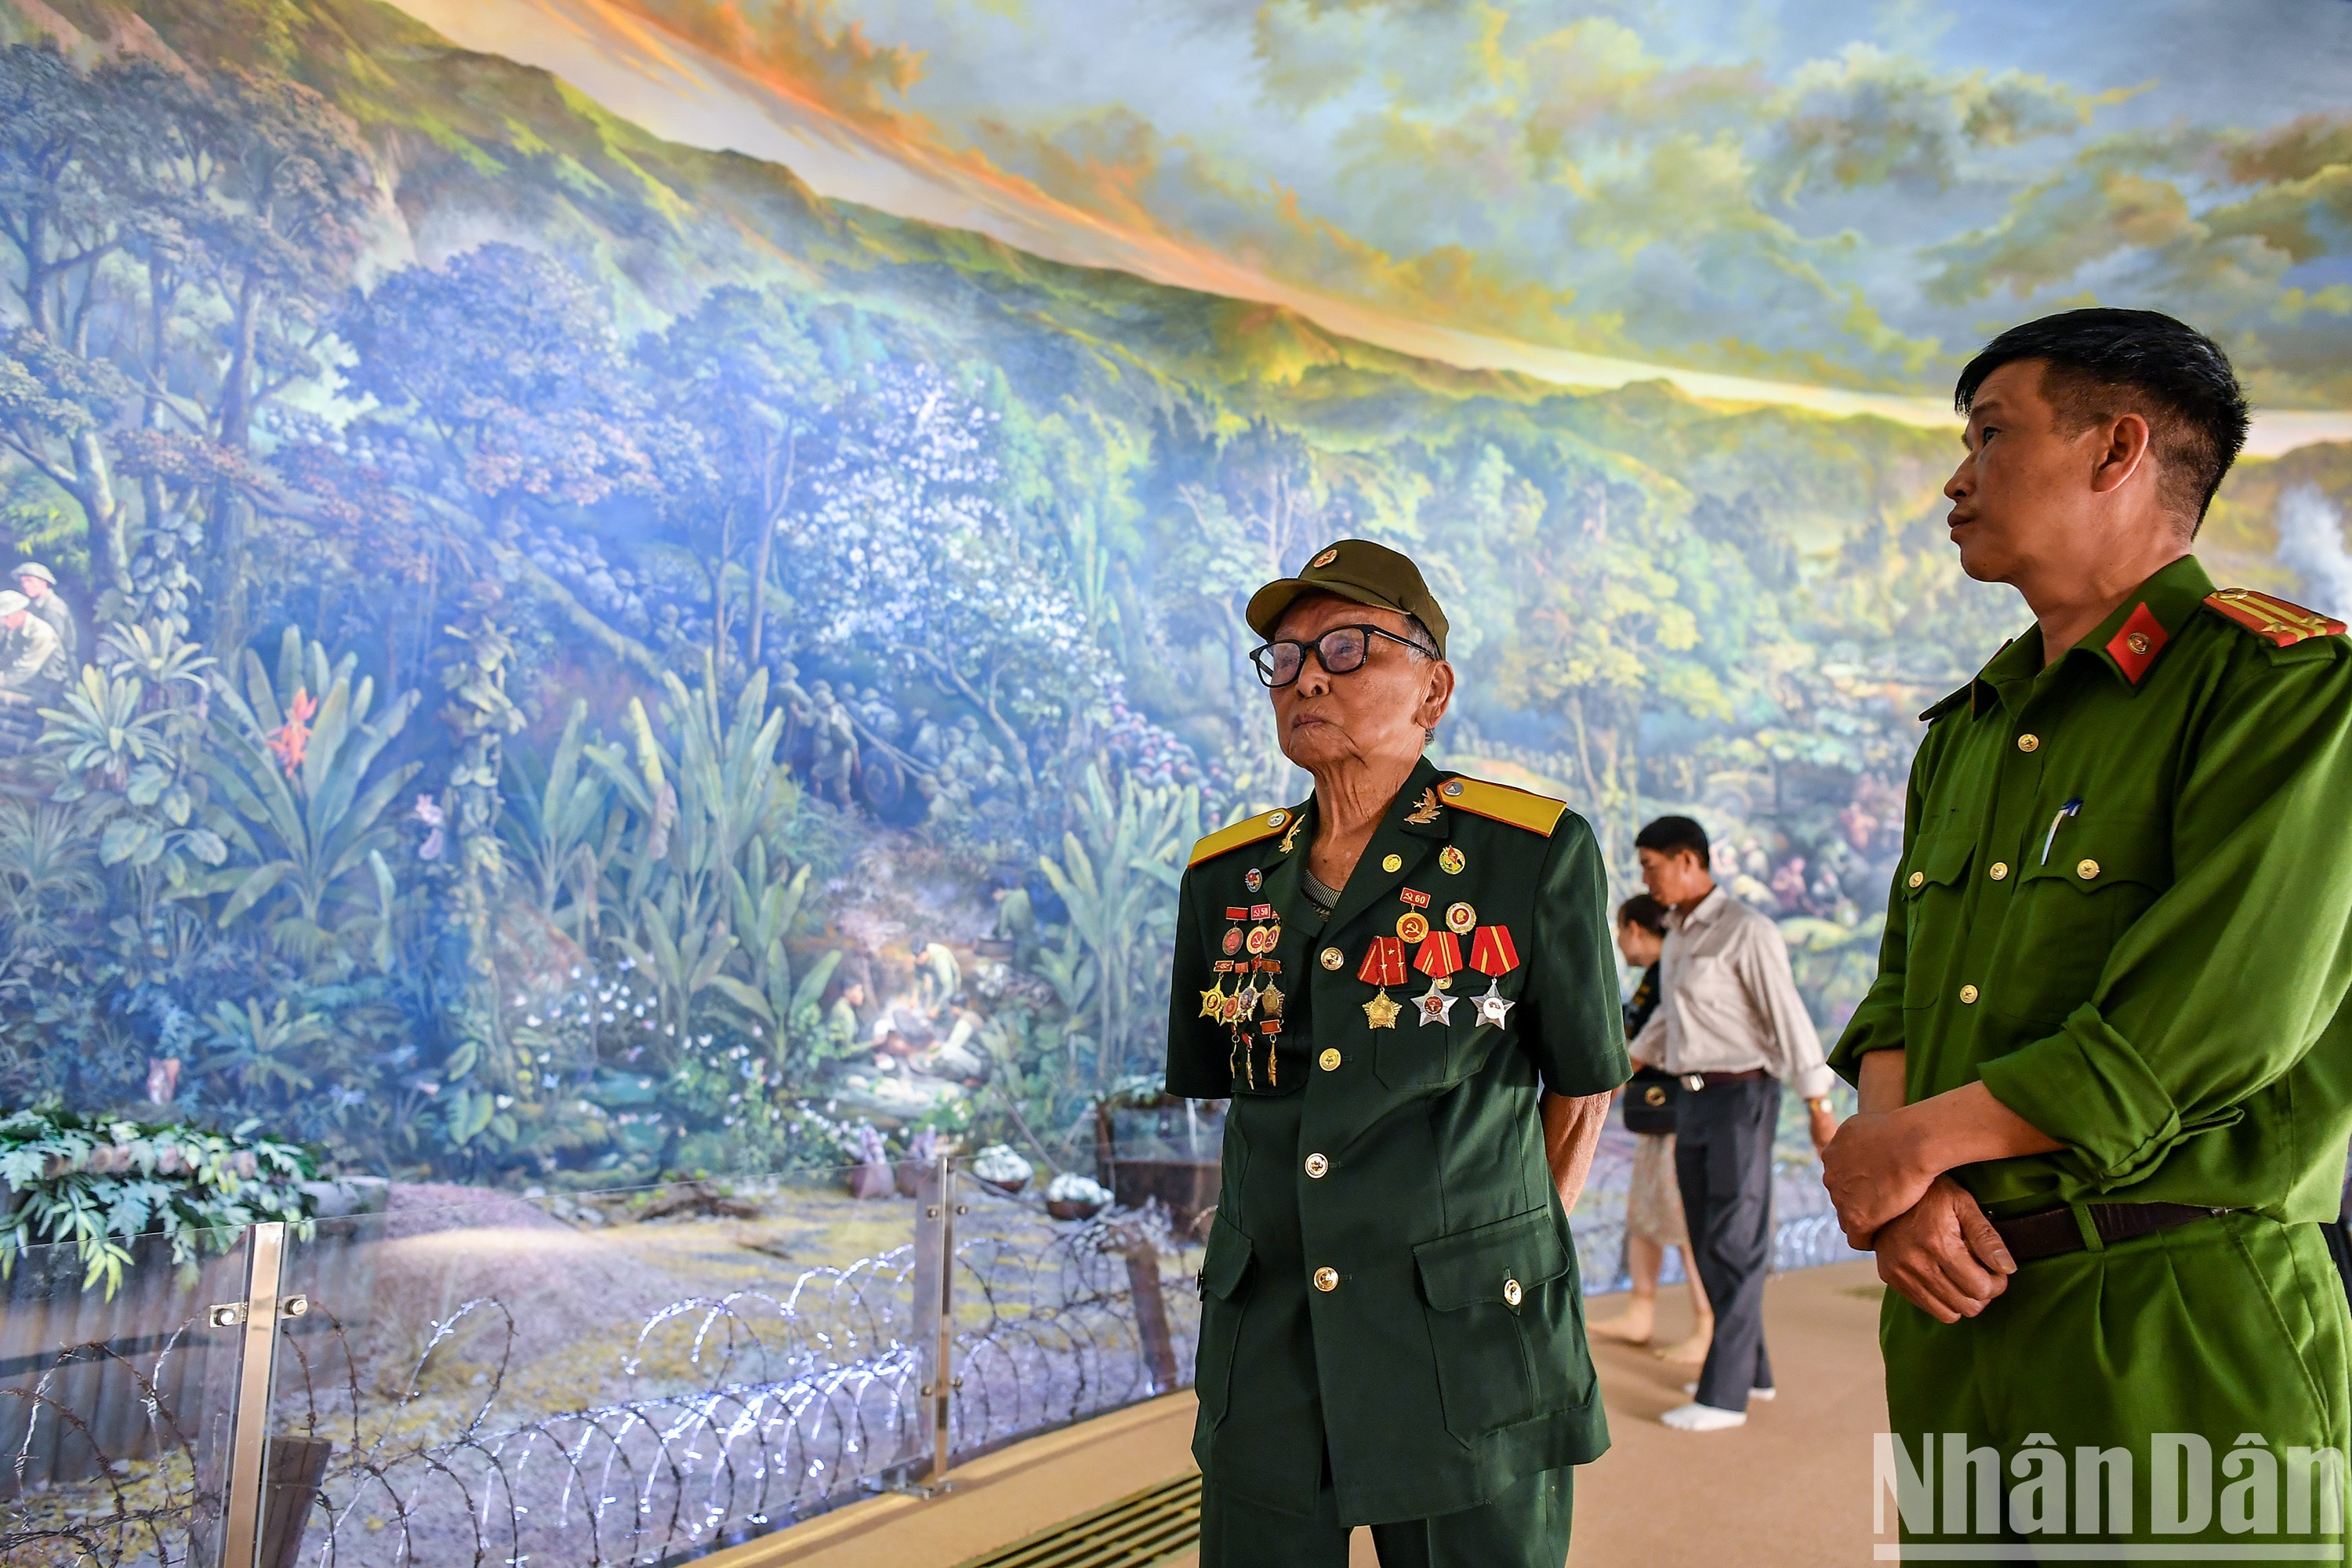 Панорама «Операция Дьенбьенфу» вызывала у ветеранов войны и посетителей взволнованные чувства